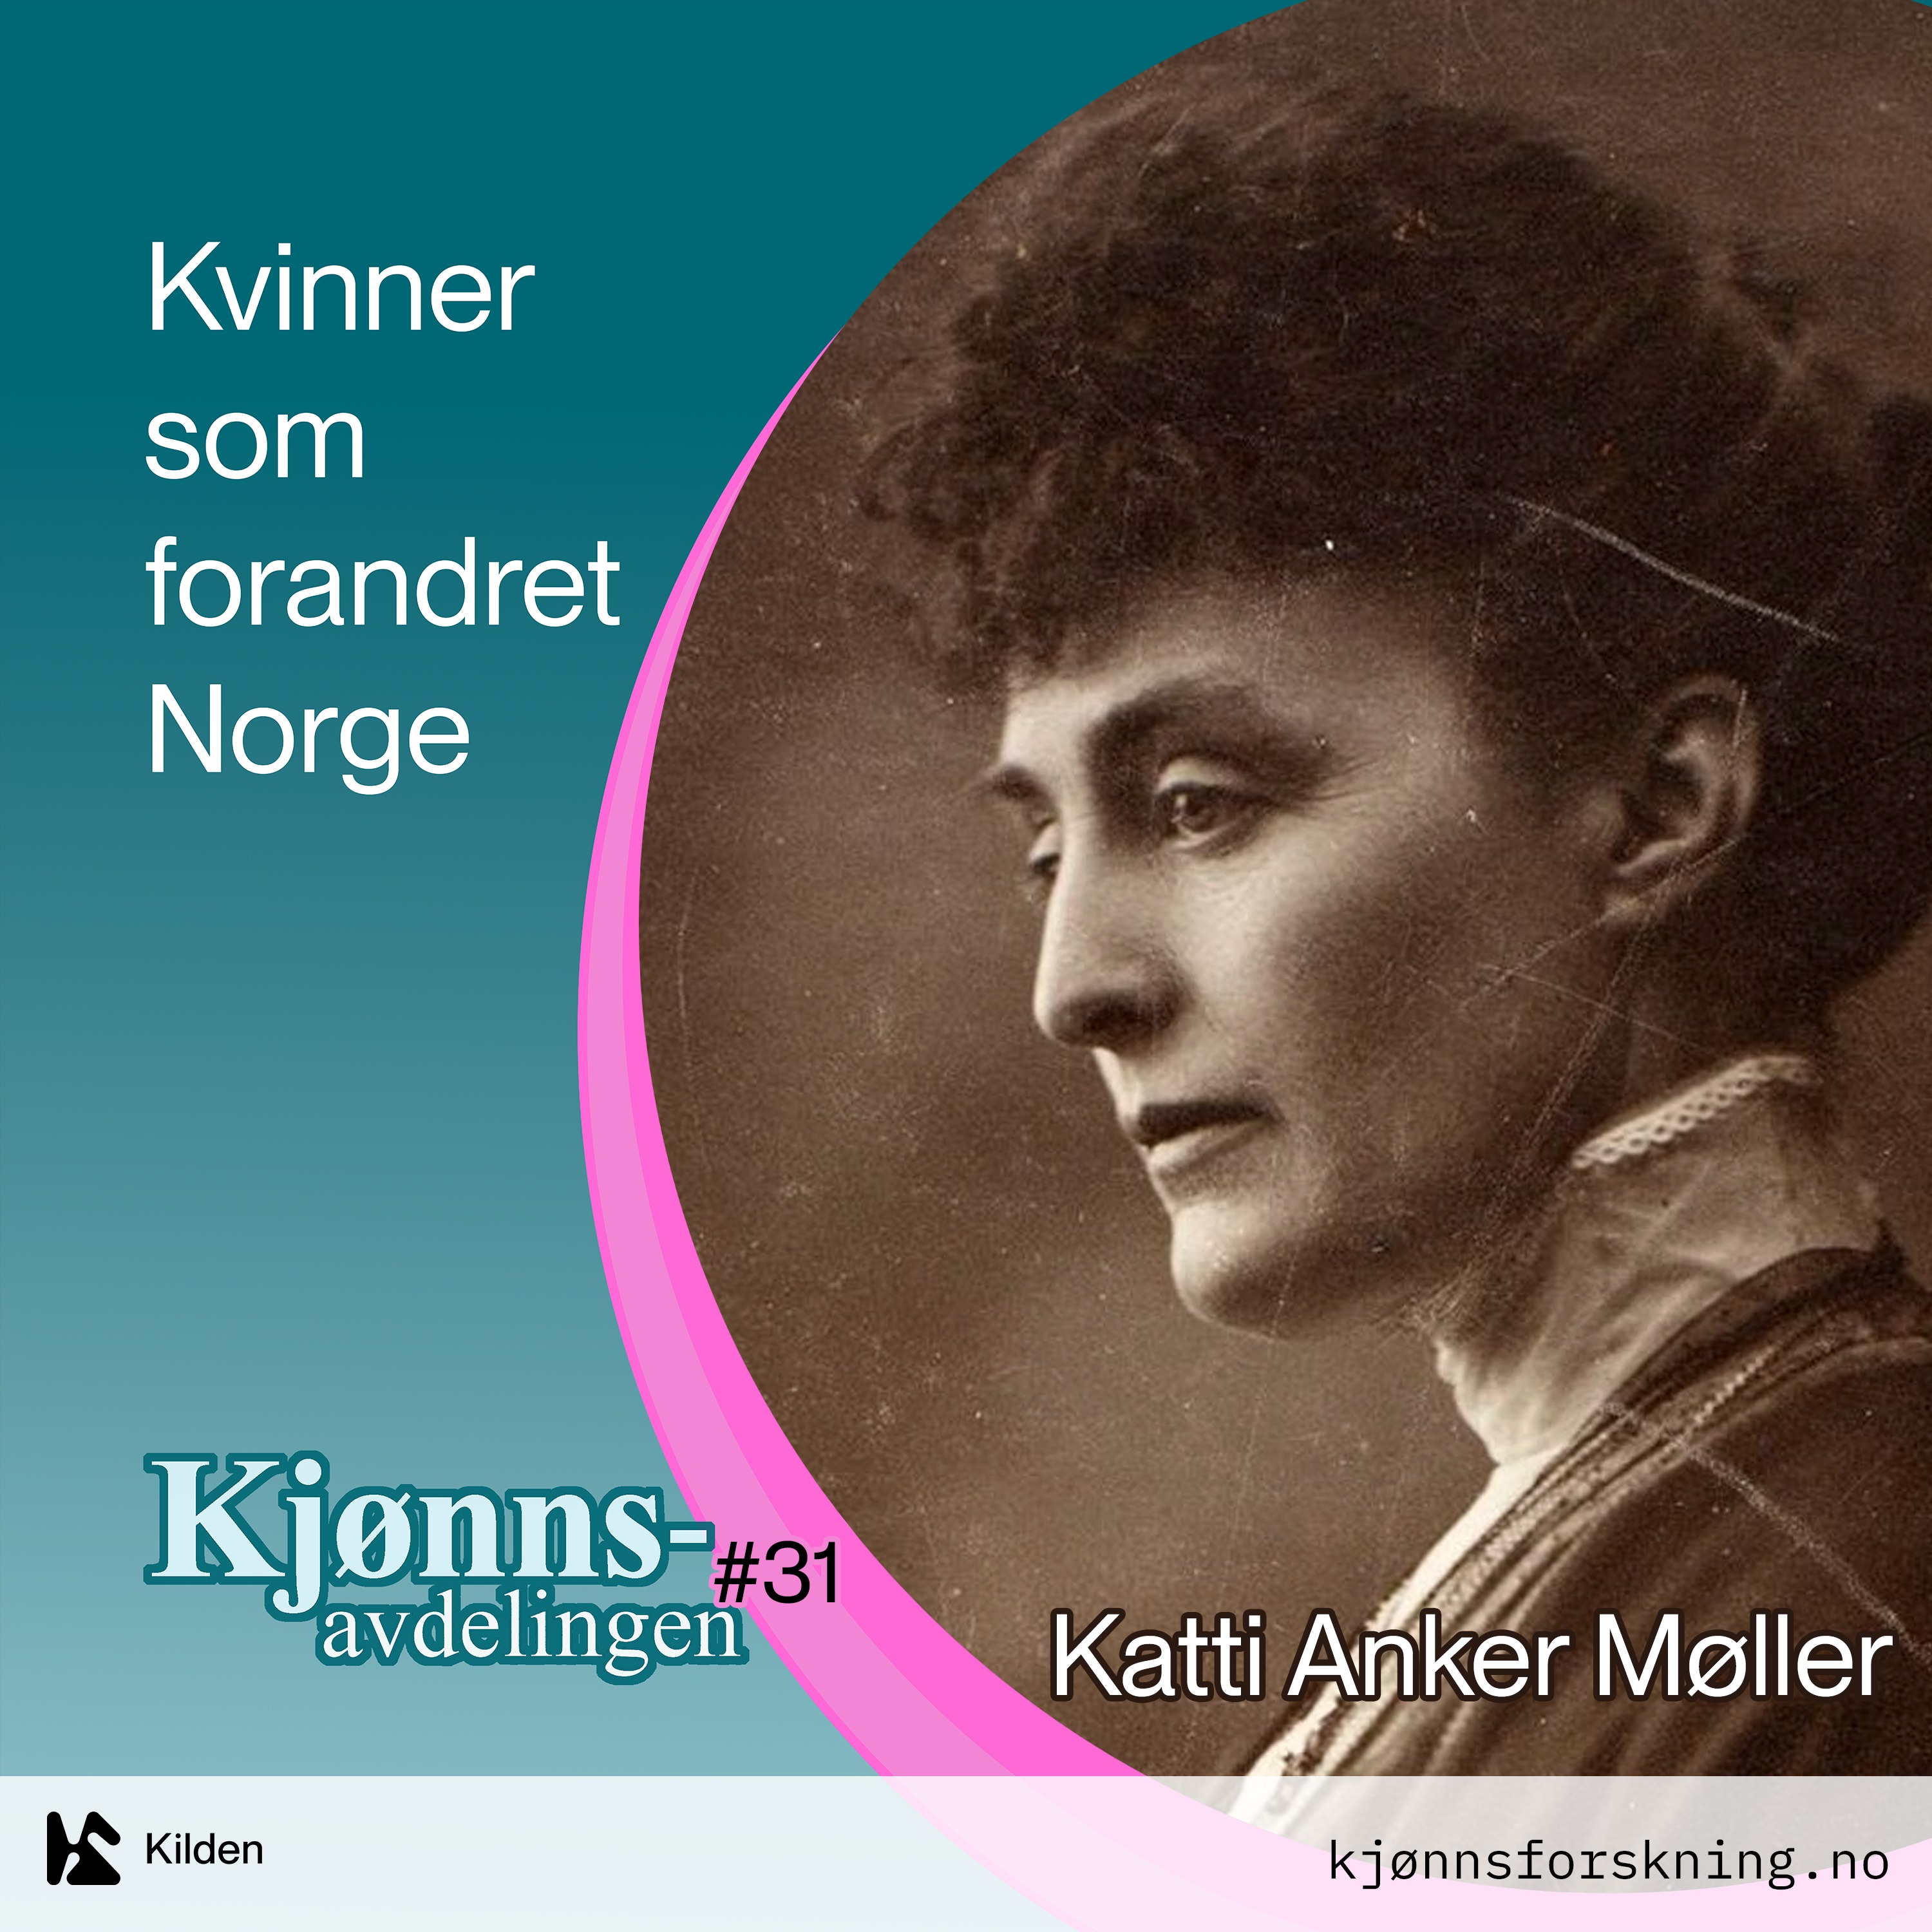 Katti Anker Møller, og kampen for fritt moderskap